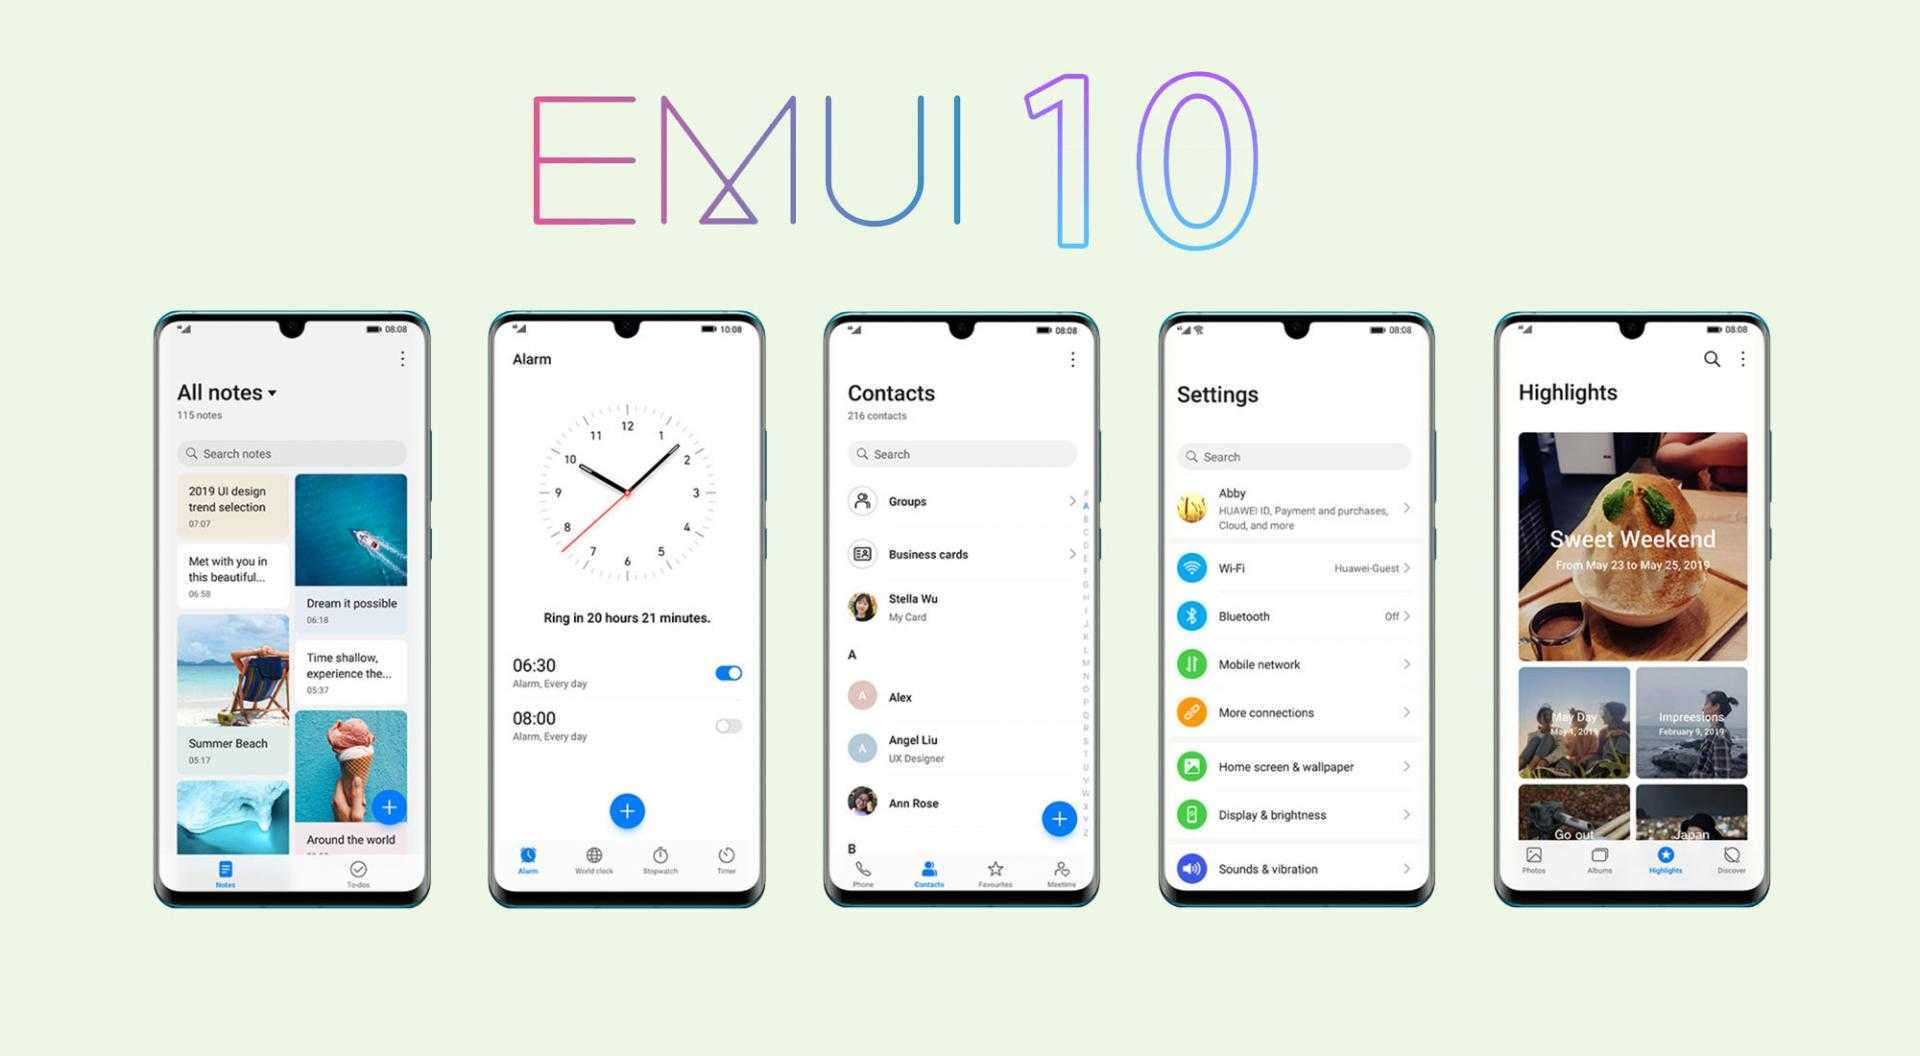 Как обновить honor/huawei до emui 11: список смартфонов 2021 года